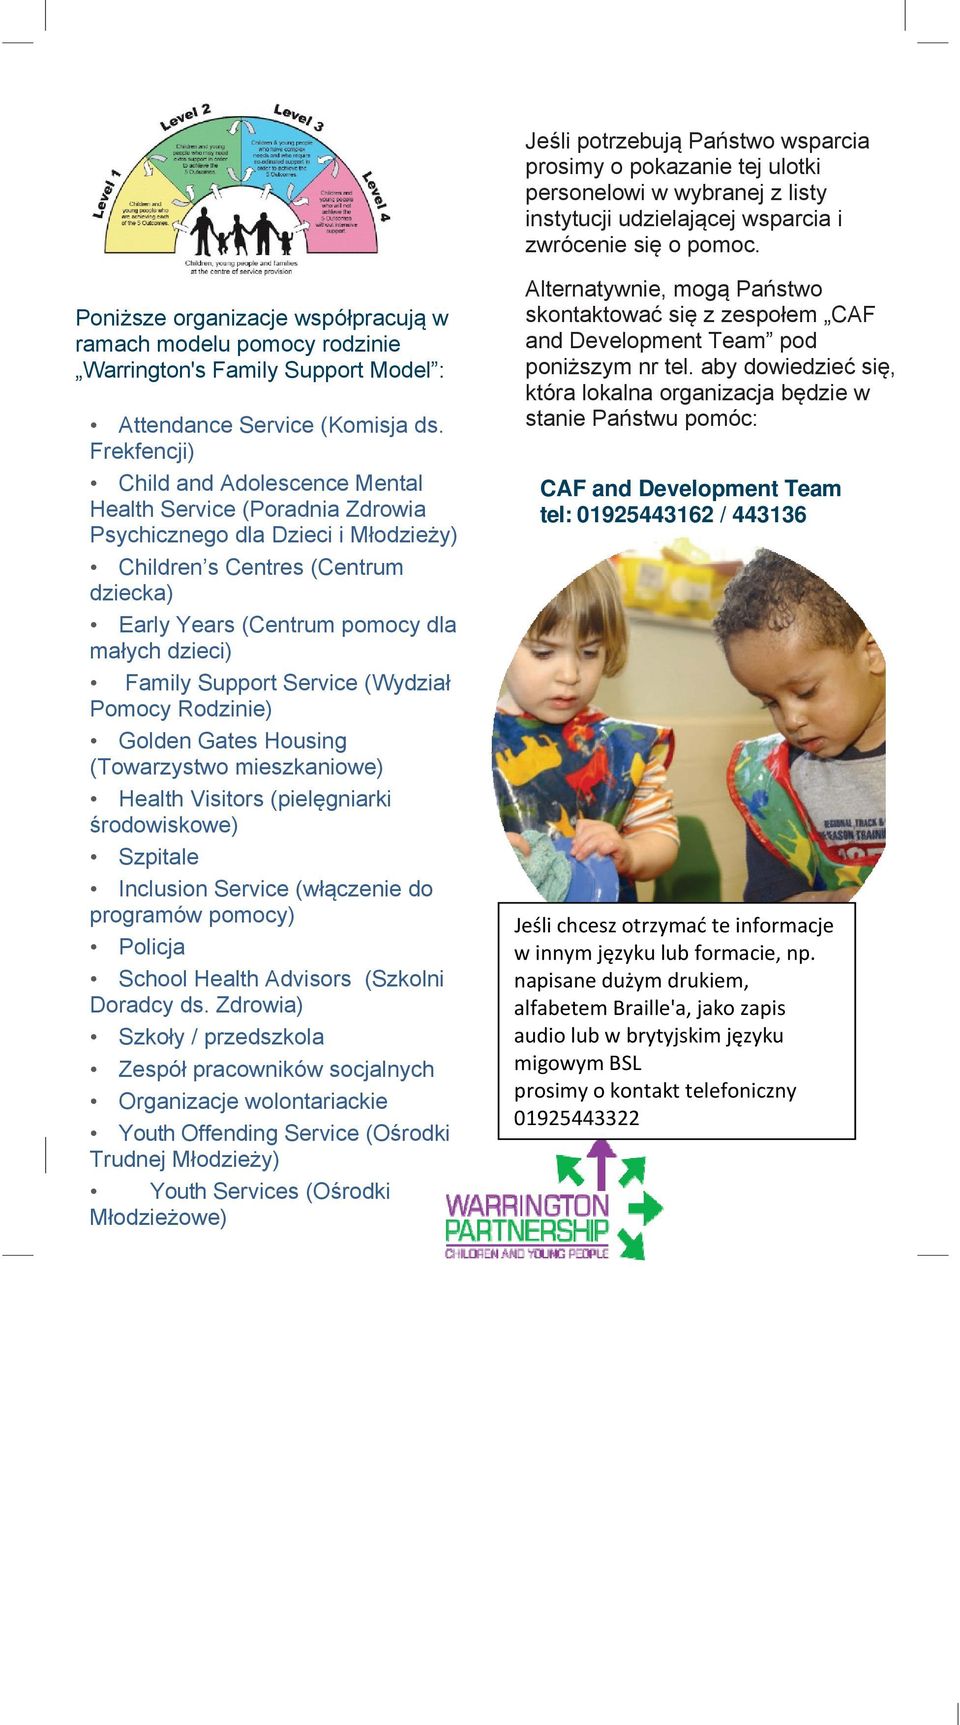 Frekfencji) Child and Adolescence Mental Health Service (Poradnia Zdrowia Psychicznego dla Dzieci i Młodzieży) Children s Centres (Centrum dziecka) Early Years (Centrum pomocy dla małych dzieci)